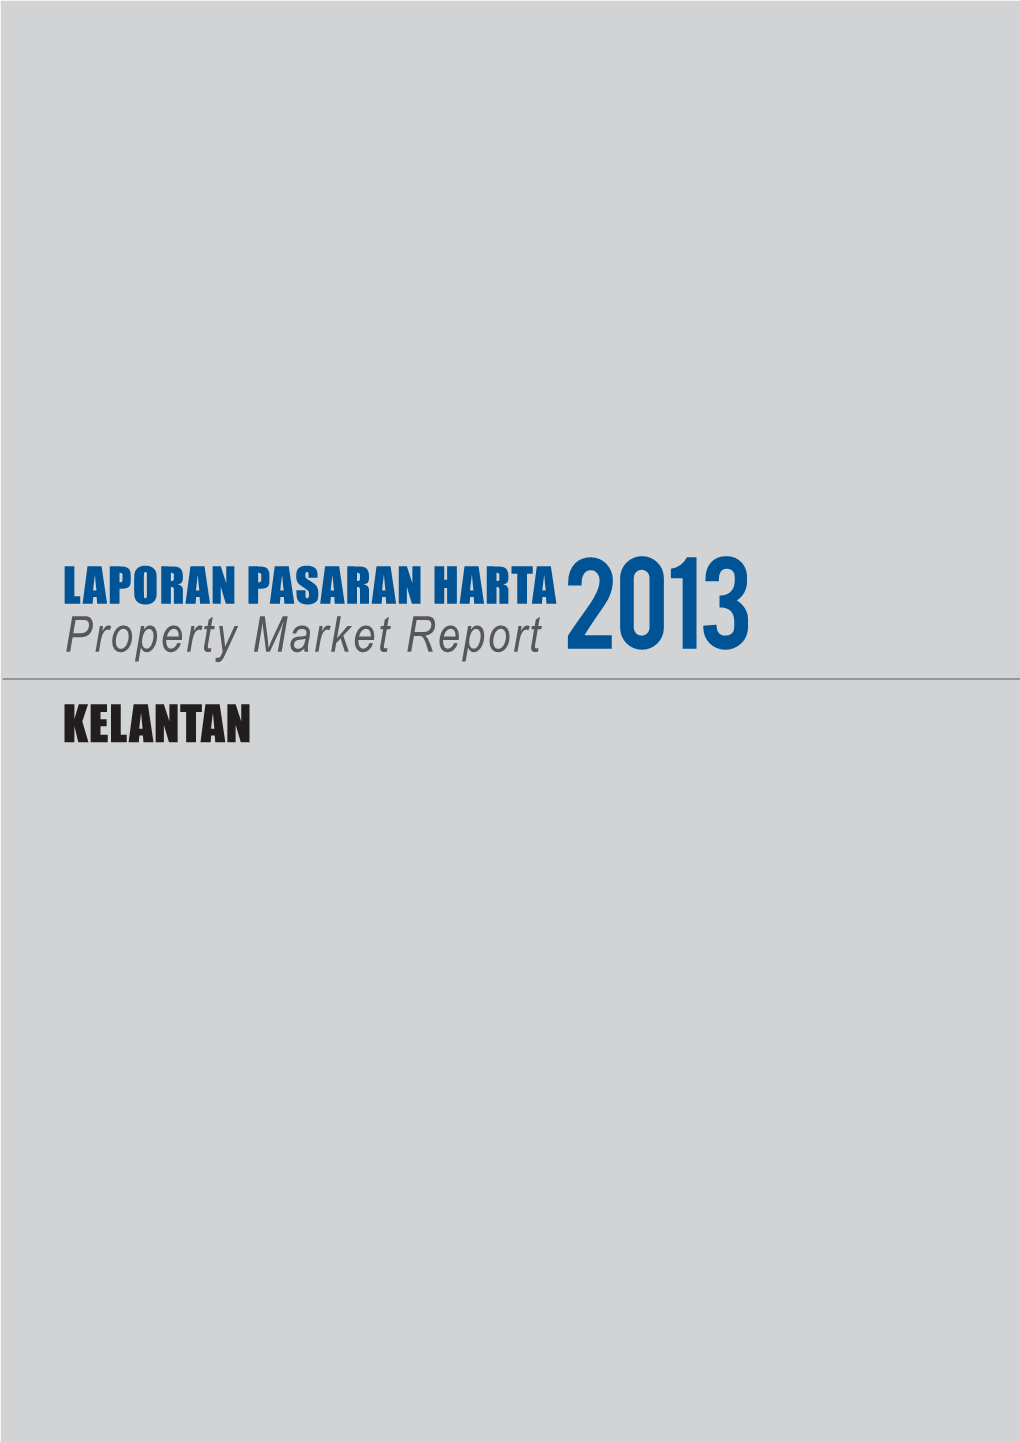 Property Market Report 2013 KELANTAN 13 KELANTAN DARUL NAIM